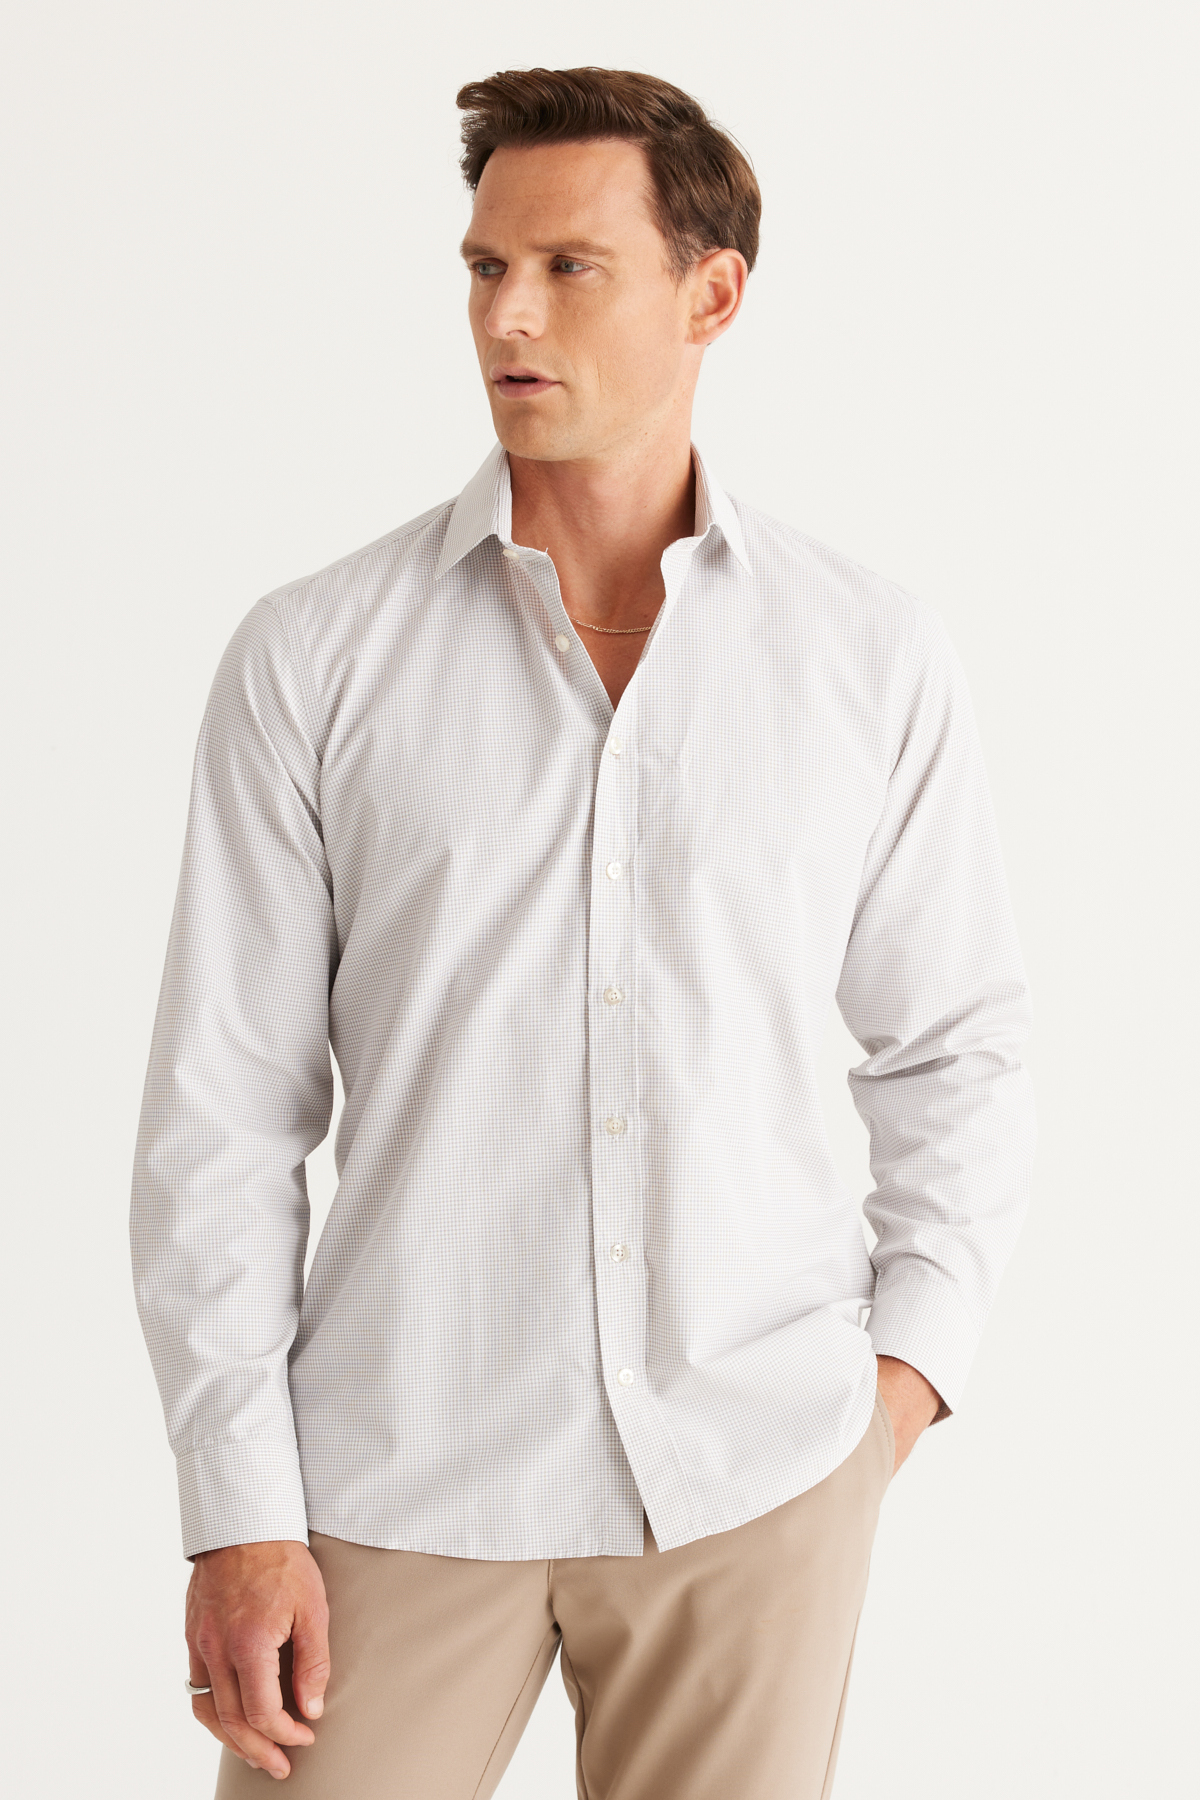 Levně ALTINYILDIZ CLASSICS Men's White-Beige Comfort Fit Comfortable Cut, Classic Collar Checked Cotton Shirt.